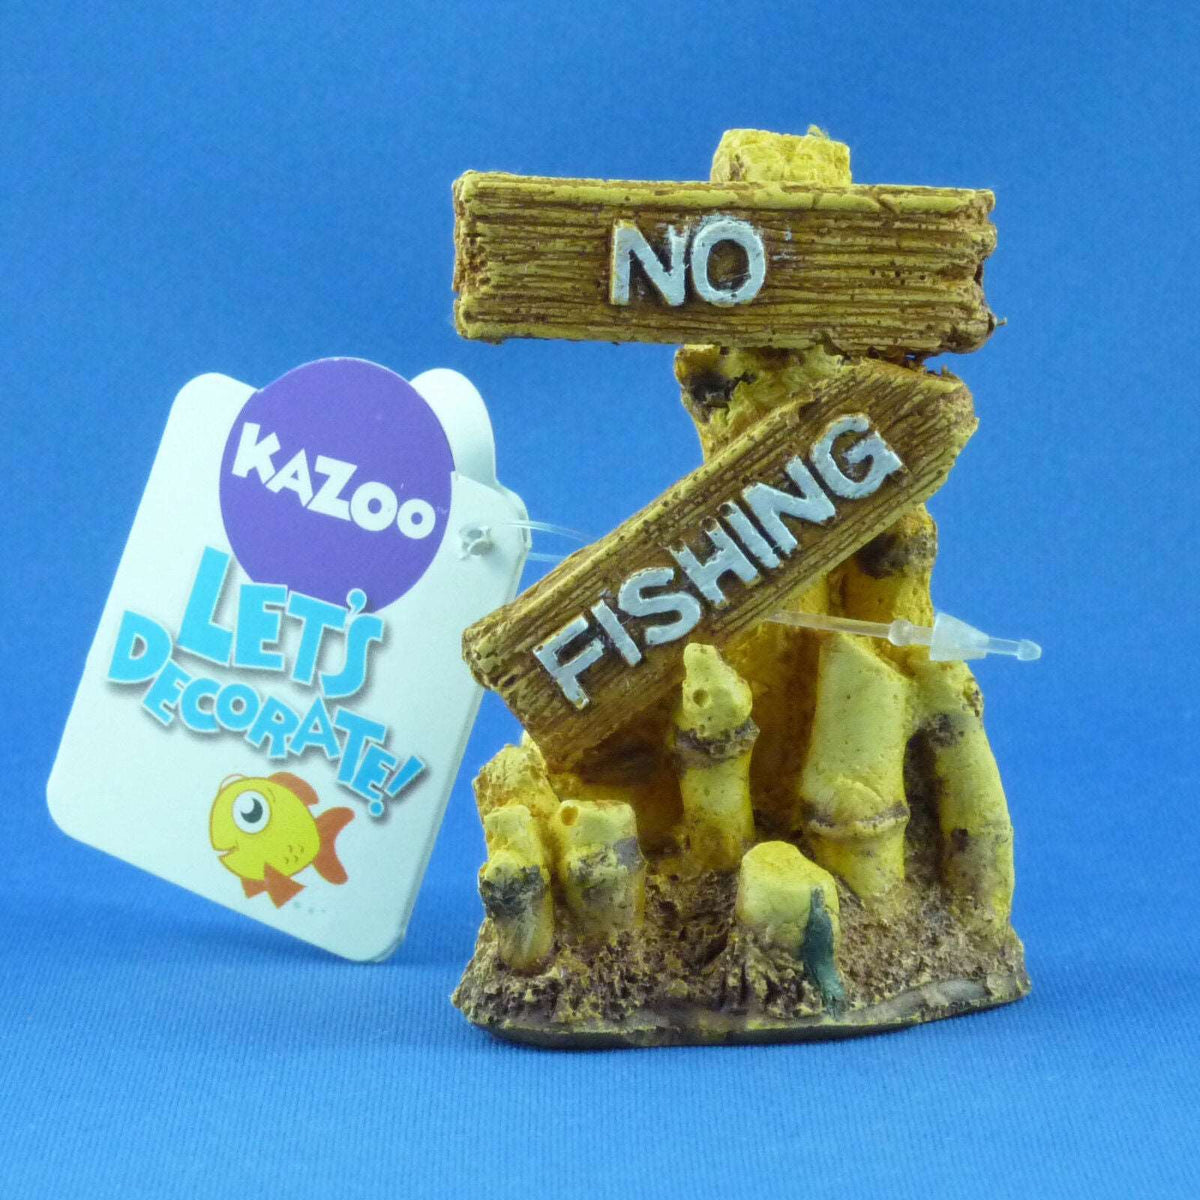 New Kazoo No Fishing Sign Bamboo